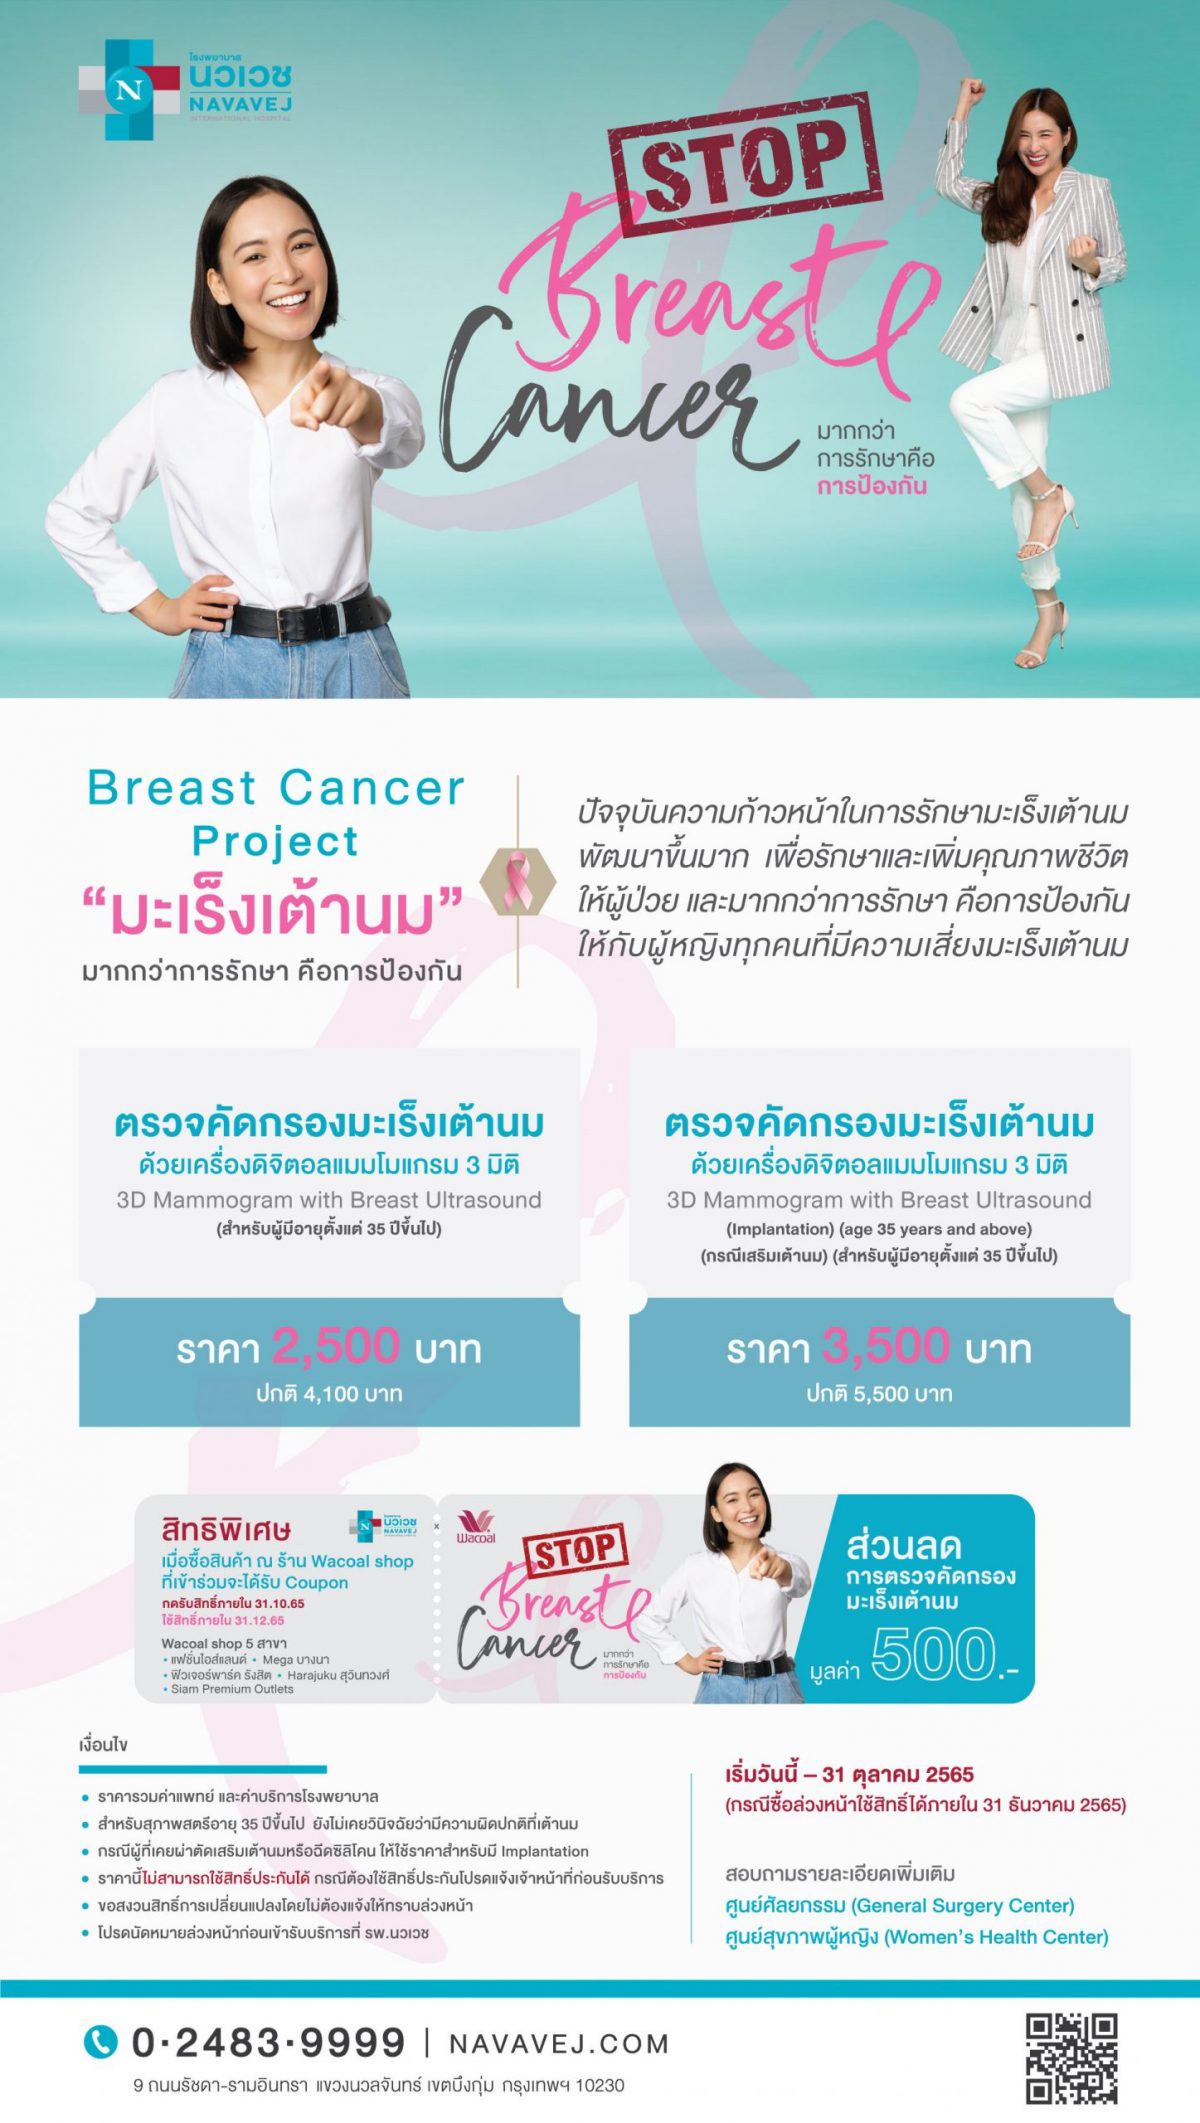 รพ.นวเวช ร่วมกับวาโก้ สนับสนุนผู้หญิงไทยห่างไกลมะเร็งเต้านม มอบคูปองส่วนลดตรวจคัดกรองมะเร็งเต้านม ตลอดเดือนตุลาคม